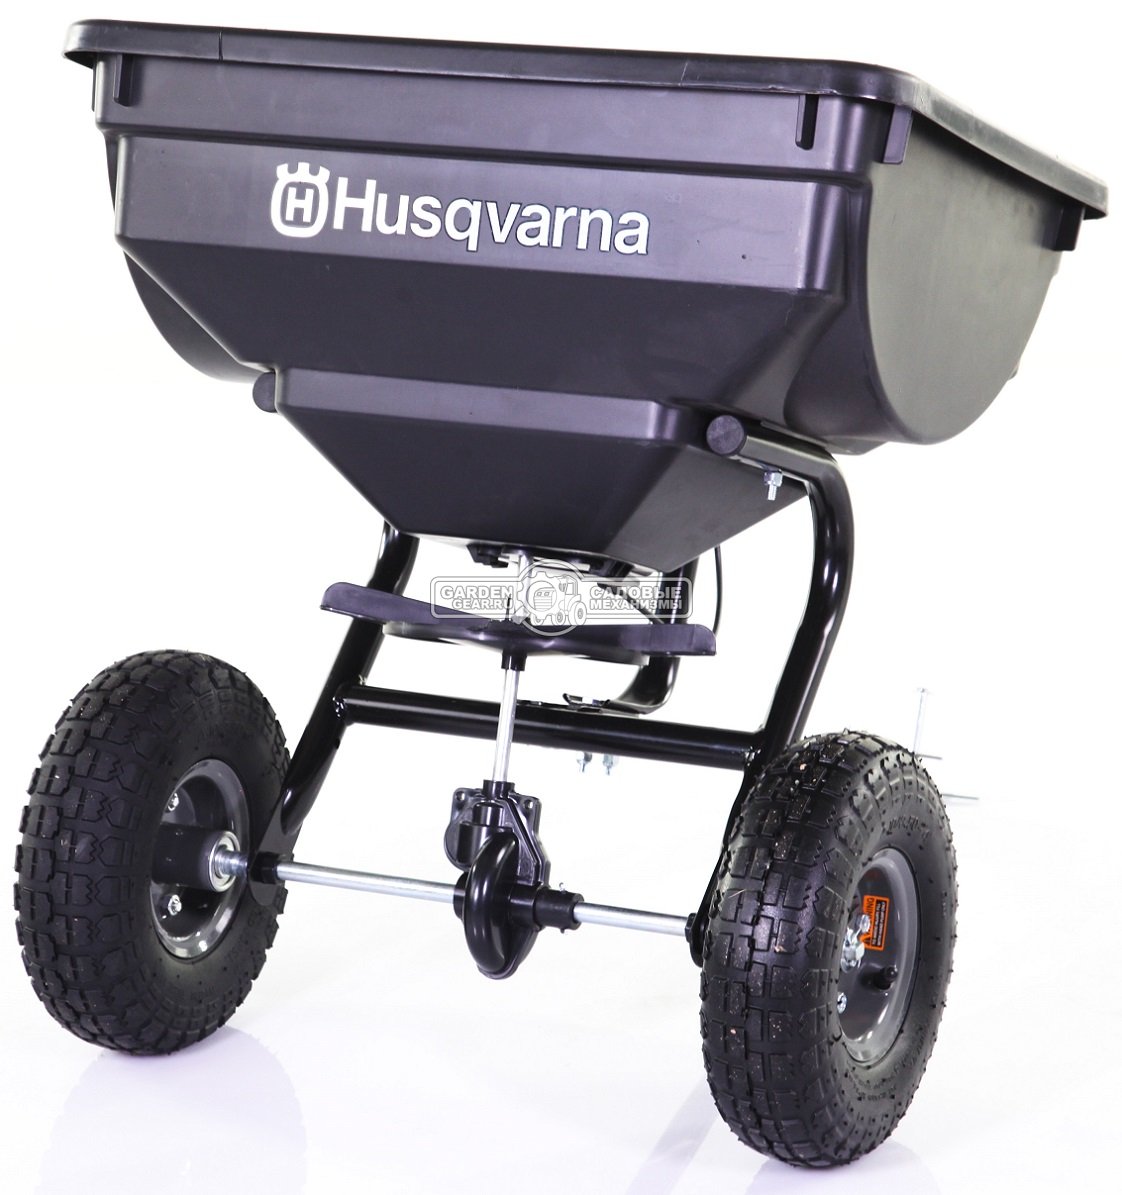 Разбрасыватель сеялка Husqvarna 30 кг. для тракторов и райдеров